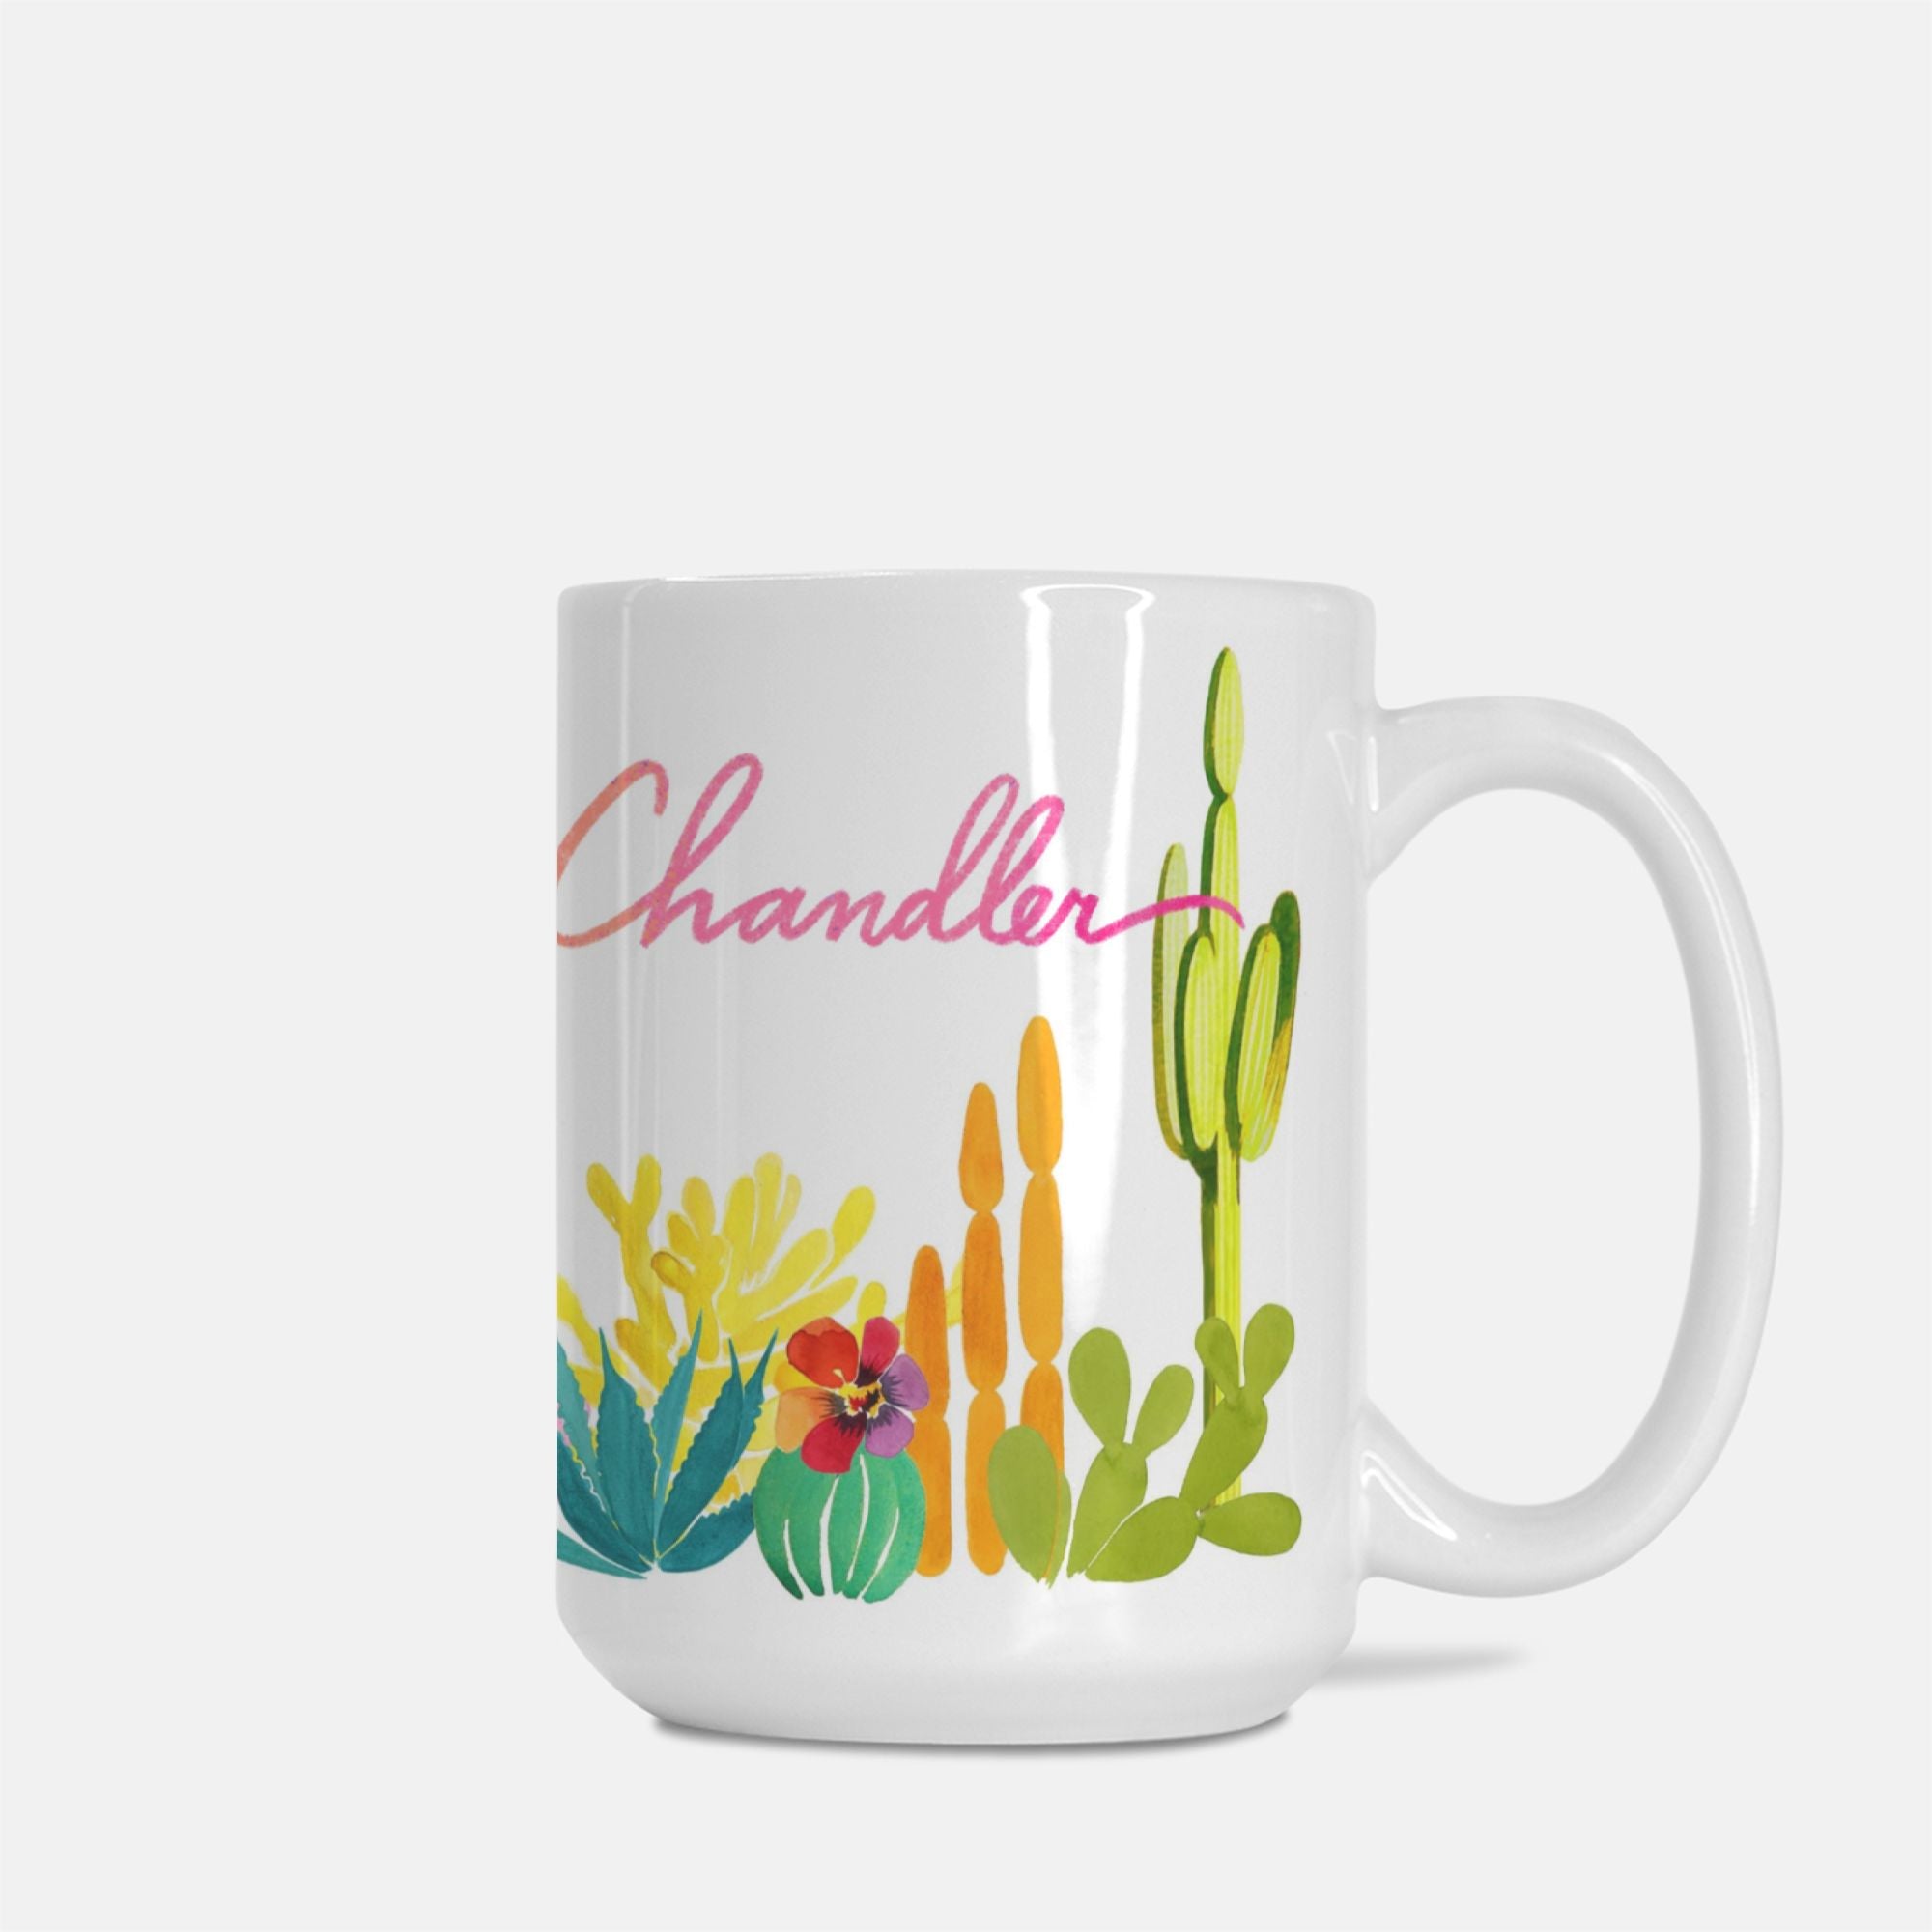 Chandler Arizona Ceramic Mug